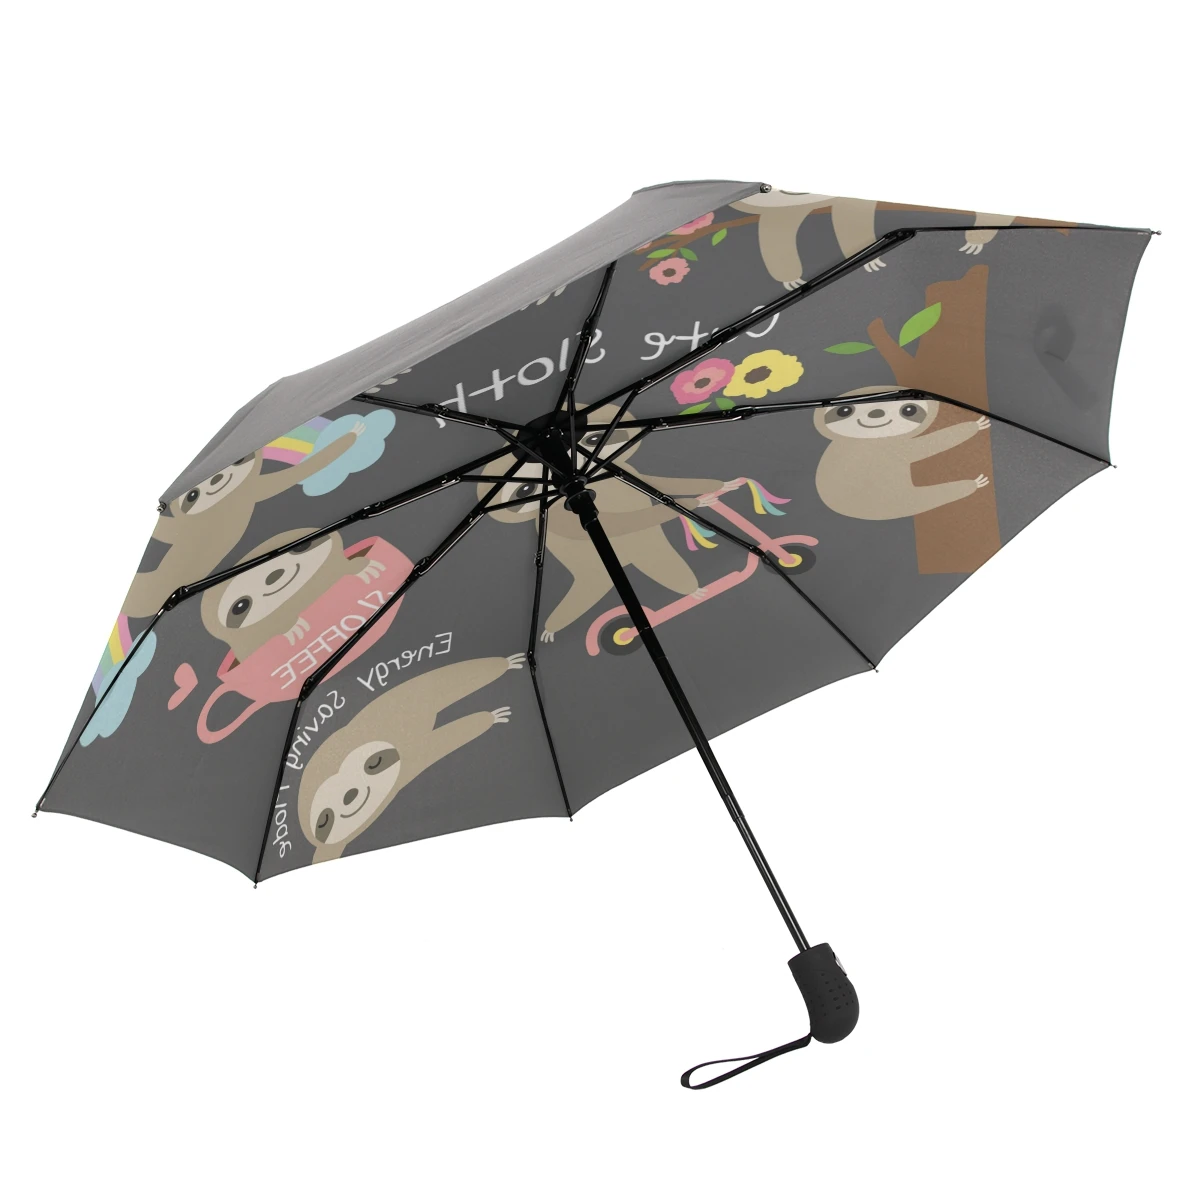 Umbrella Sloth Custom Umbrella Folding Umbrella Rainproof & Windproof